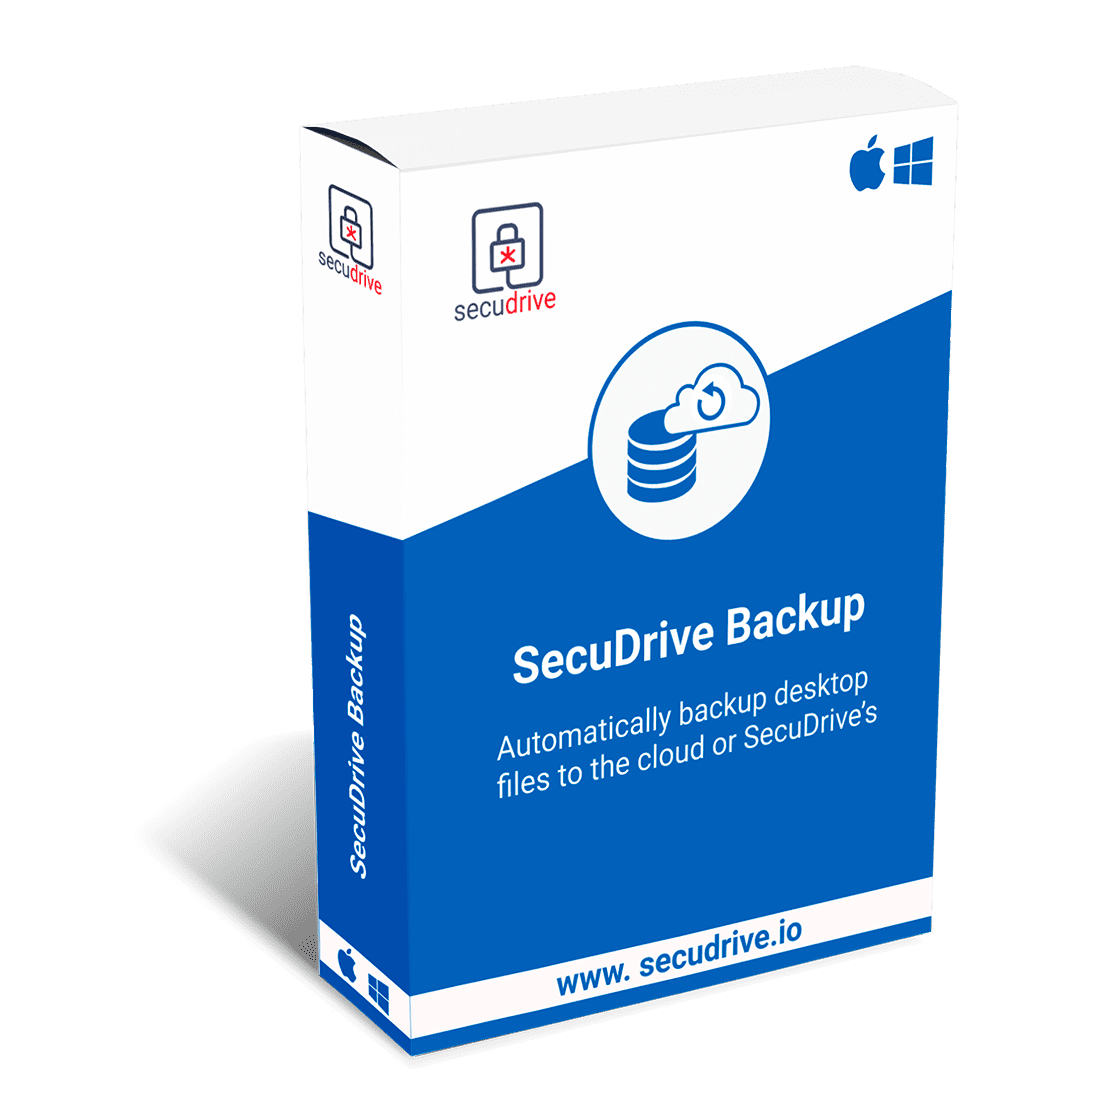 SecuDrive BackUp Product